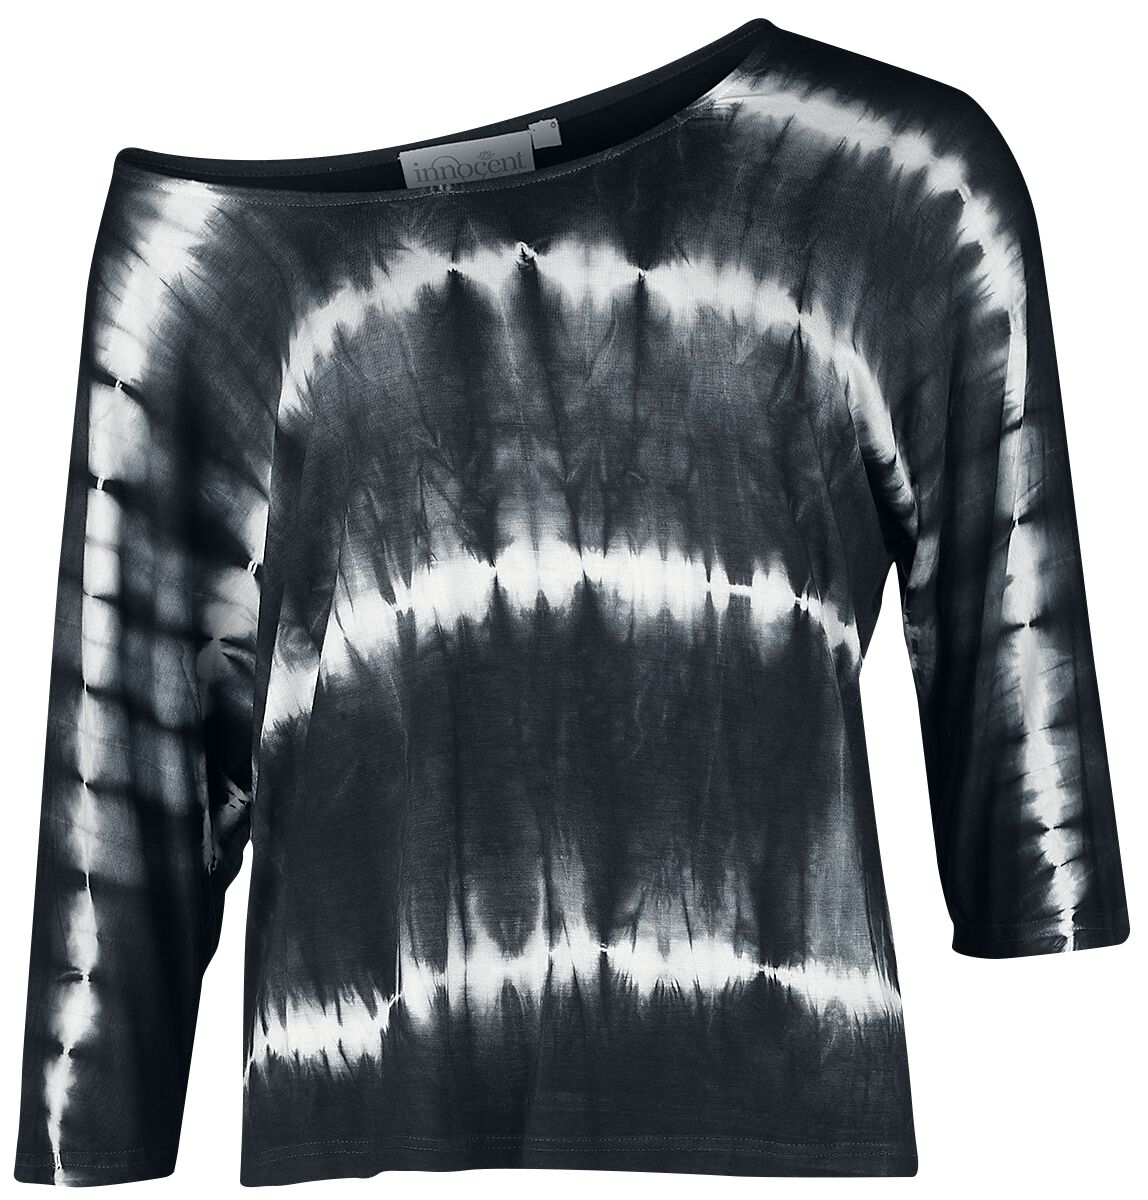 Innocent - Gothic Langarmshirt - Solana Top - XS bis 4XL - für Damen - Größe XL - schwarz/weiß von innocent